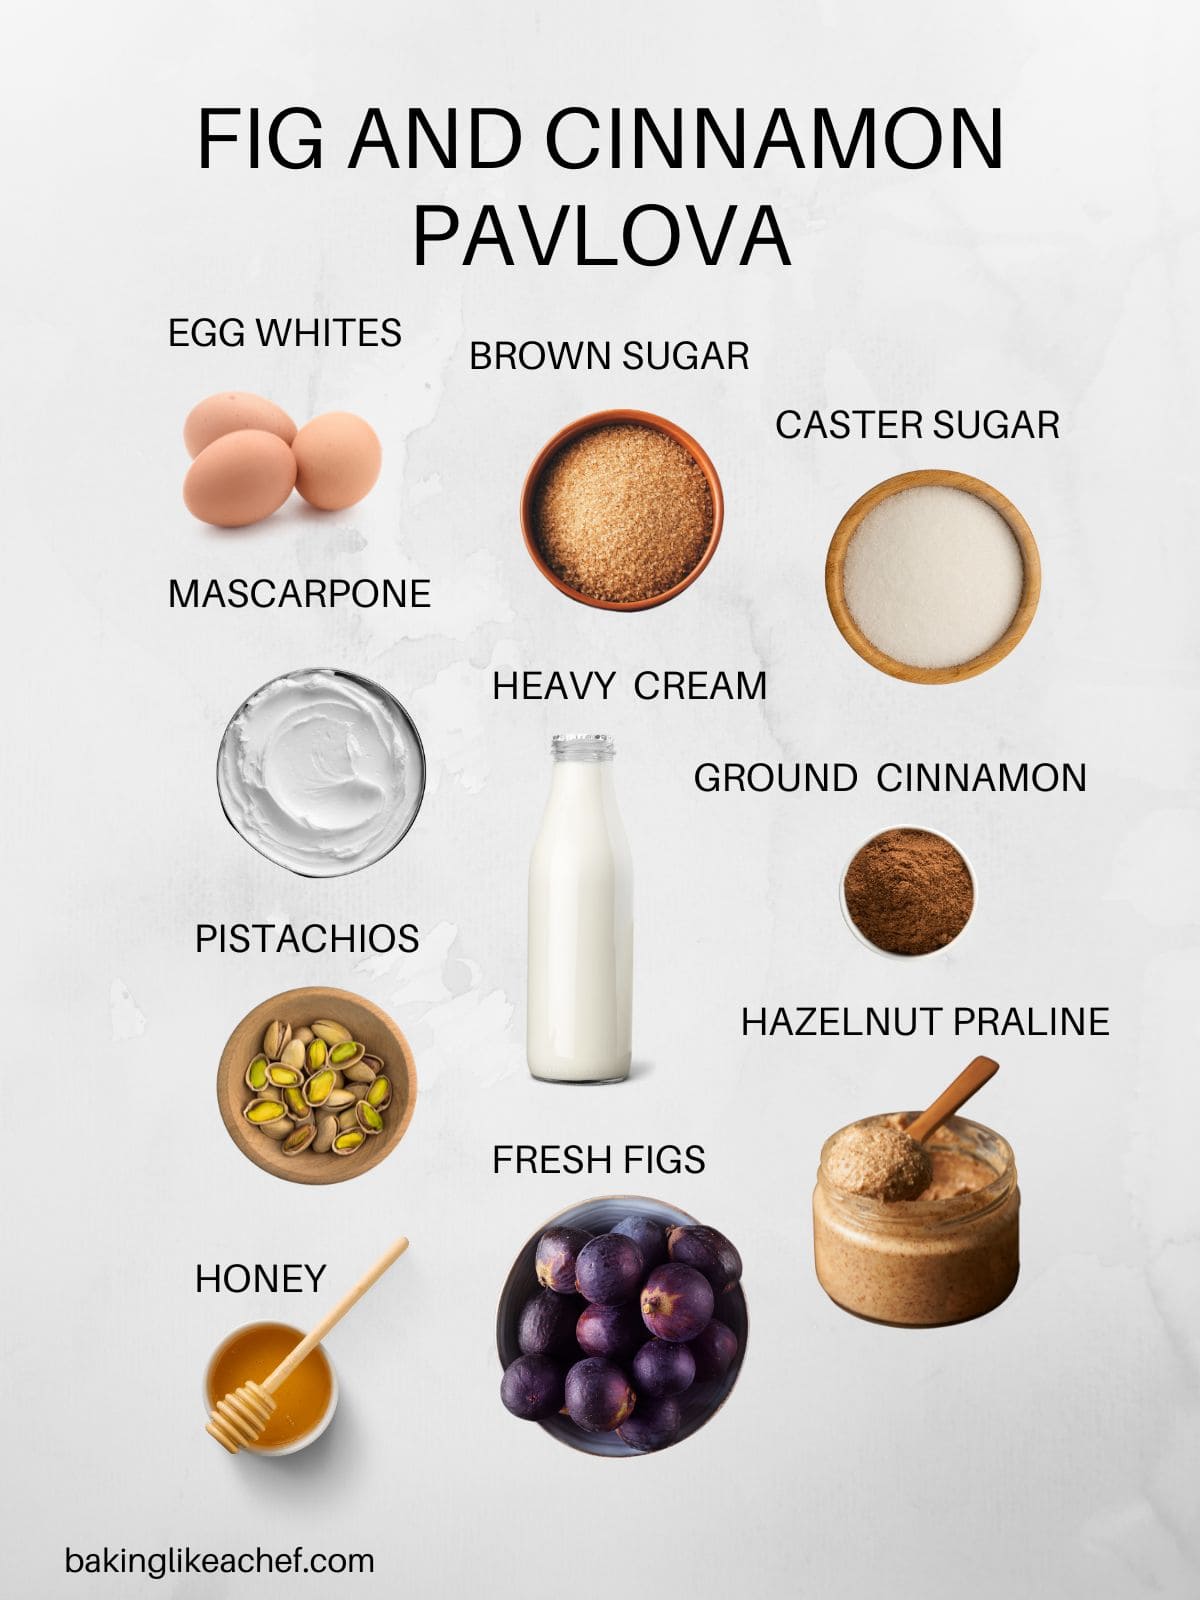 Fig and cinnamon Pavlova ingredients.